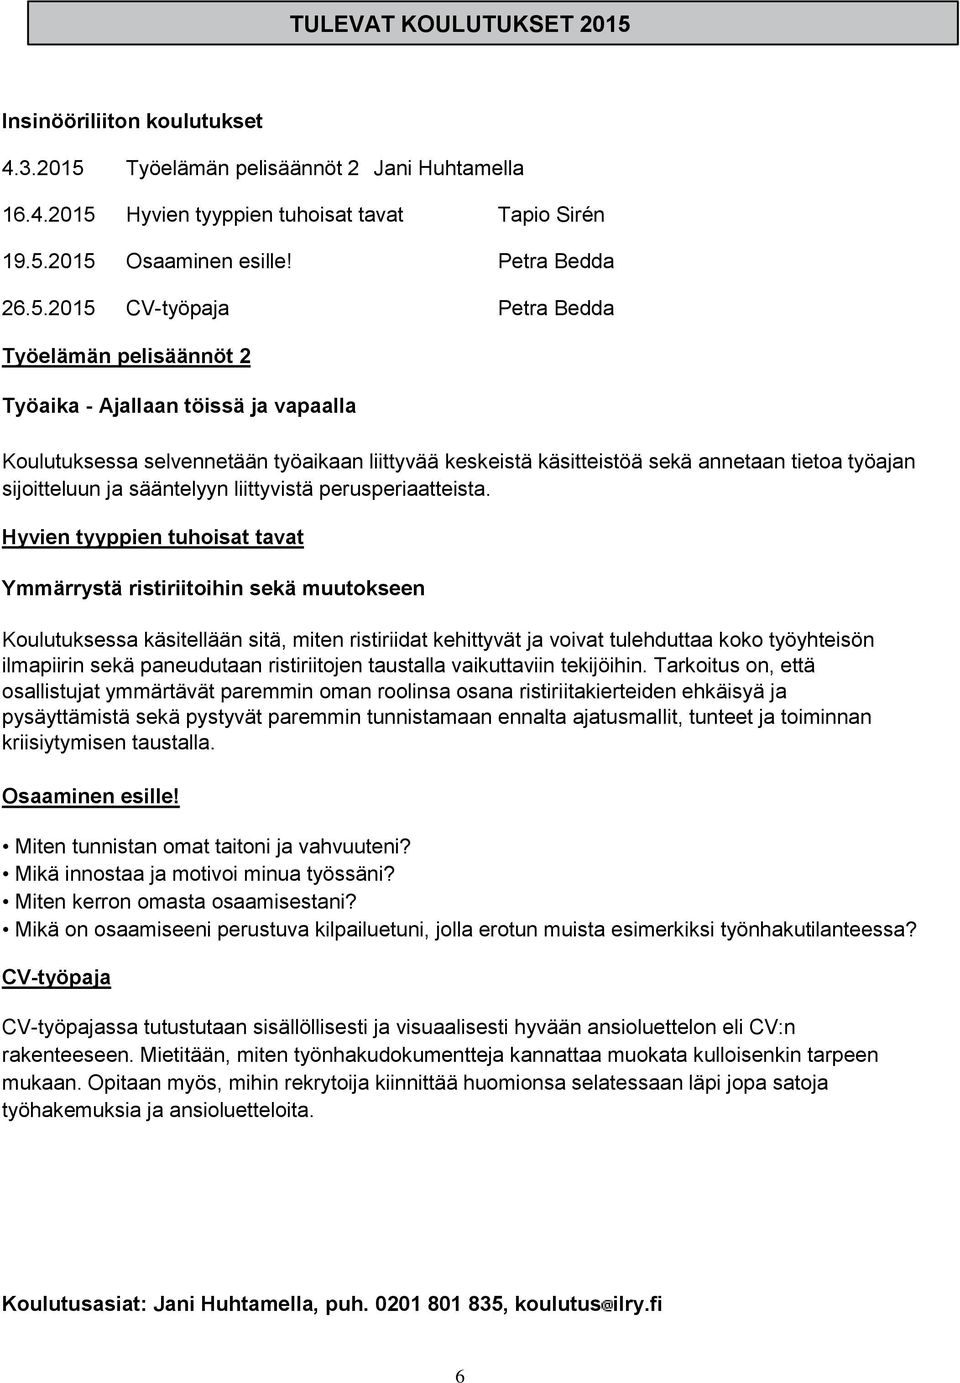 Työelämän pelisäännöt 2 Jani Huhtamella 16.4.2015 